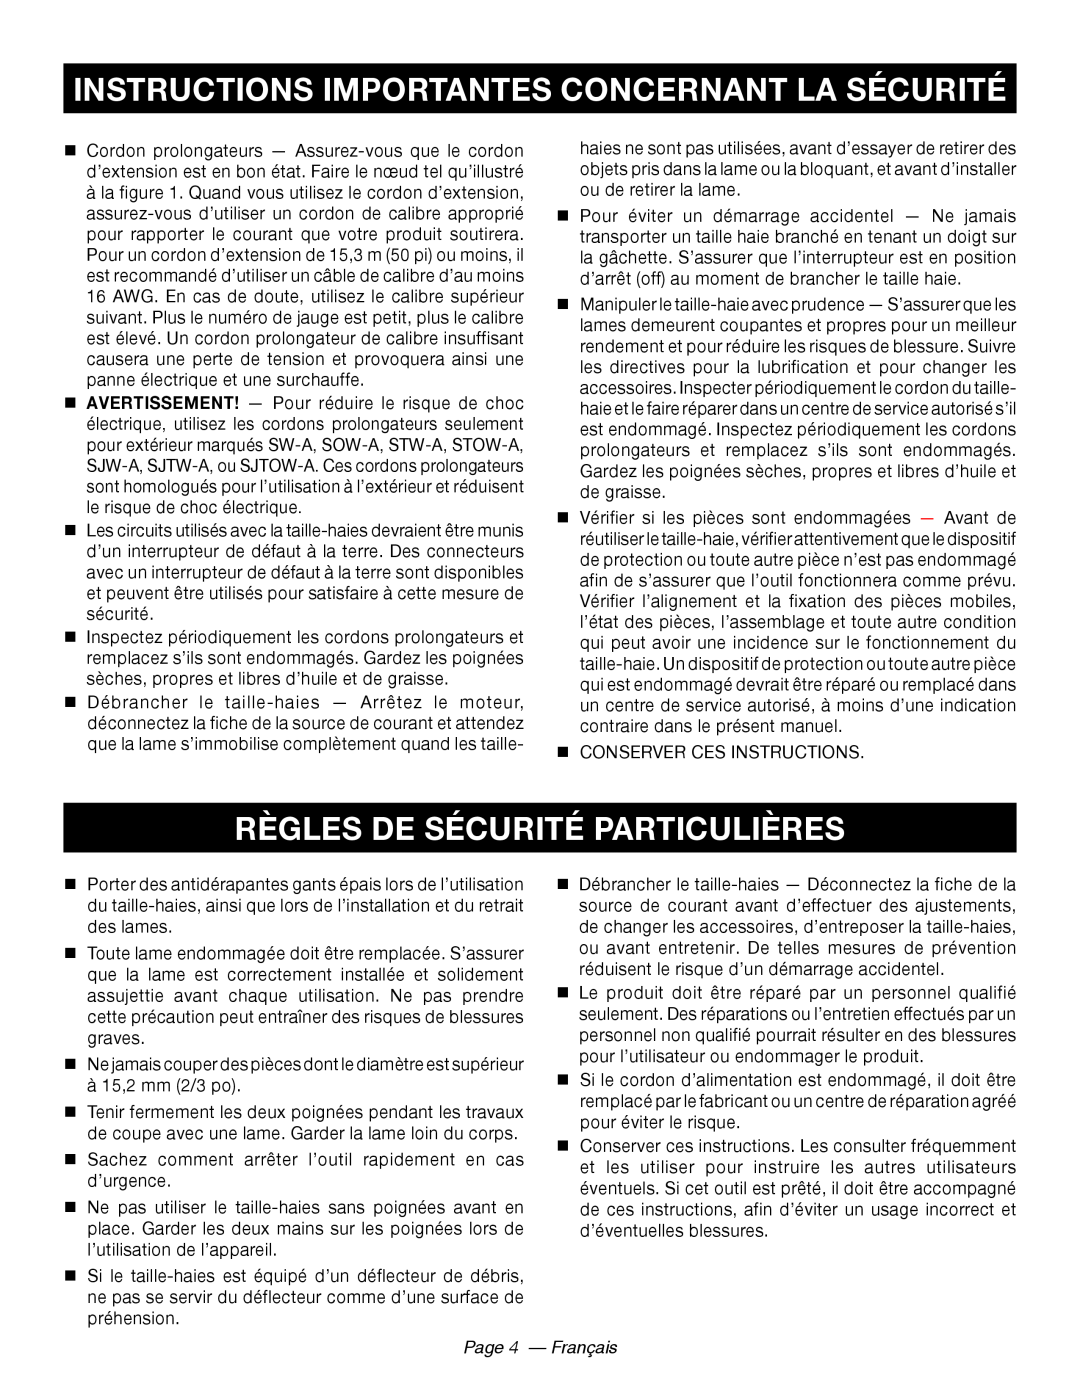 Ryobi RY44140 Règles De Sécurité Particulières, Page 4 - Français, Instructions Importantes Concernant La Sécurité 